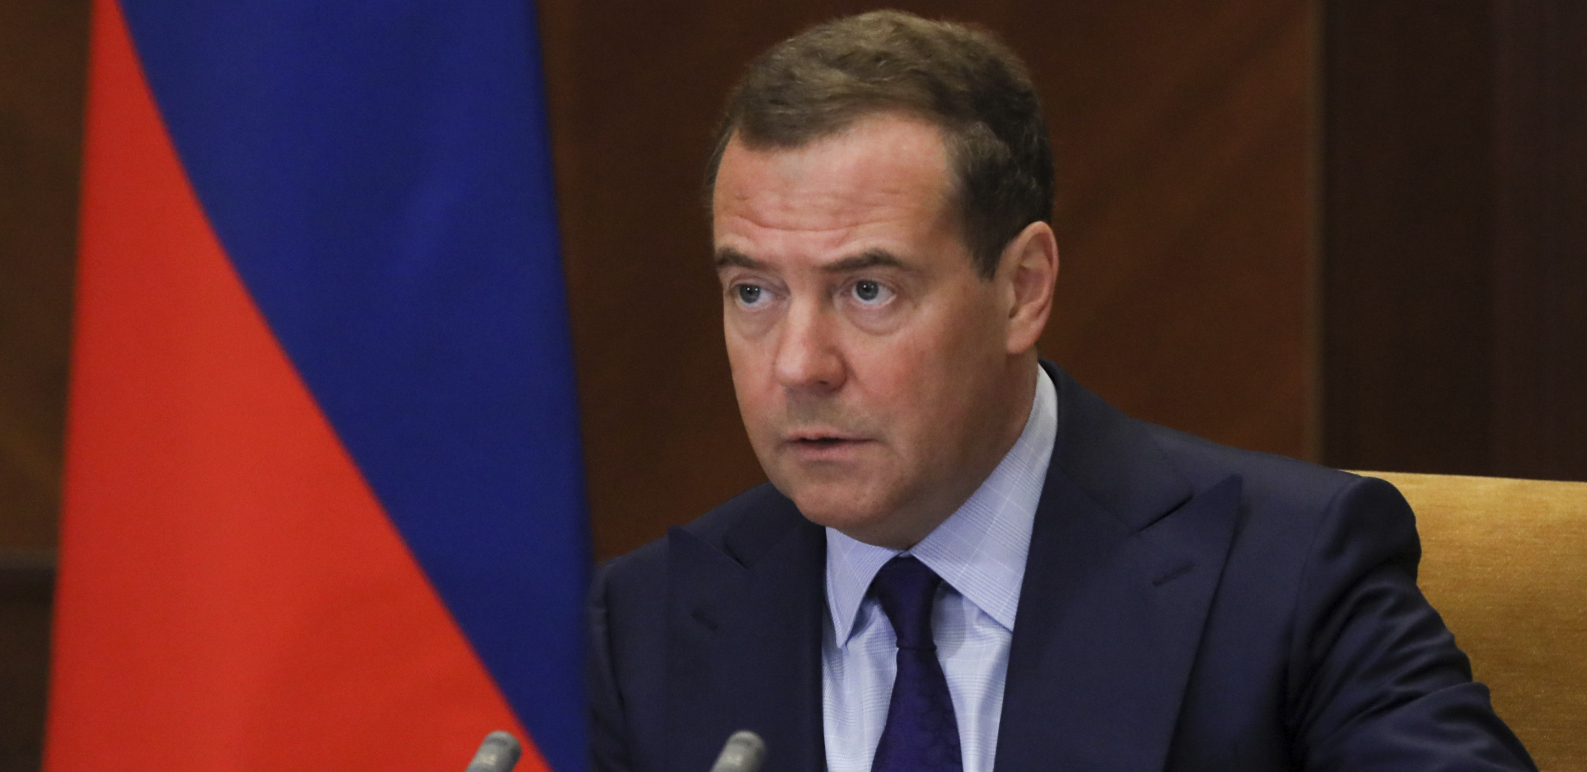 RUSIJA ULAZI U TOTALNI RAT? Medvedev otkrio! Ako uspe referendum Moskva ima odrešene ruke!